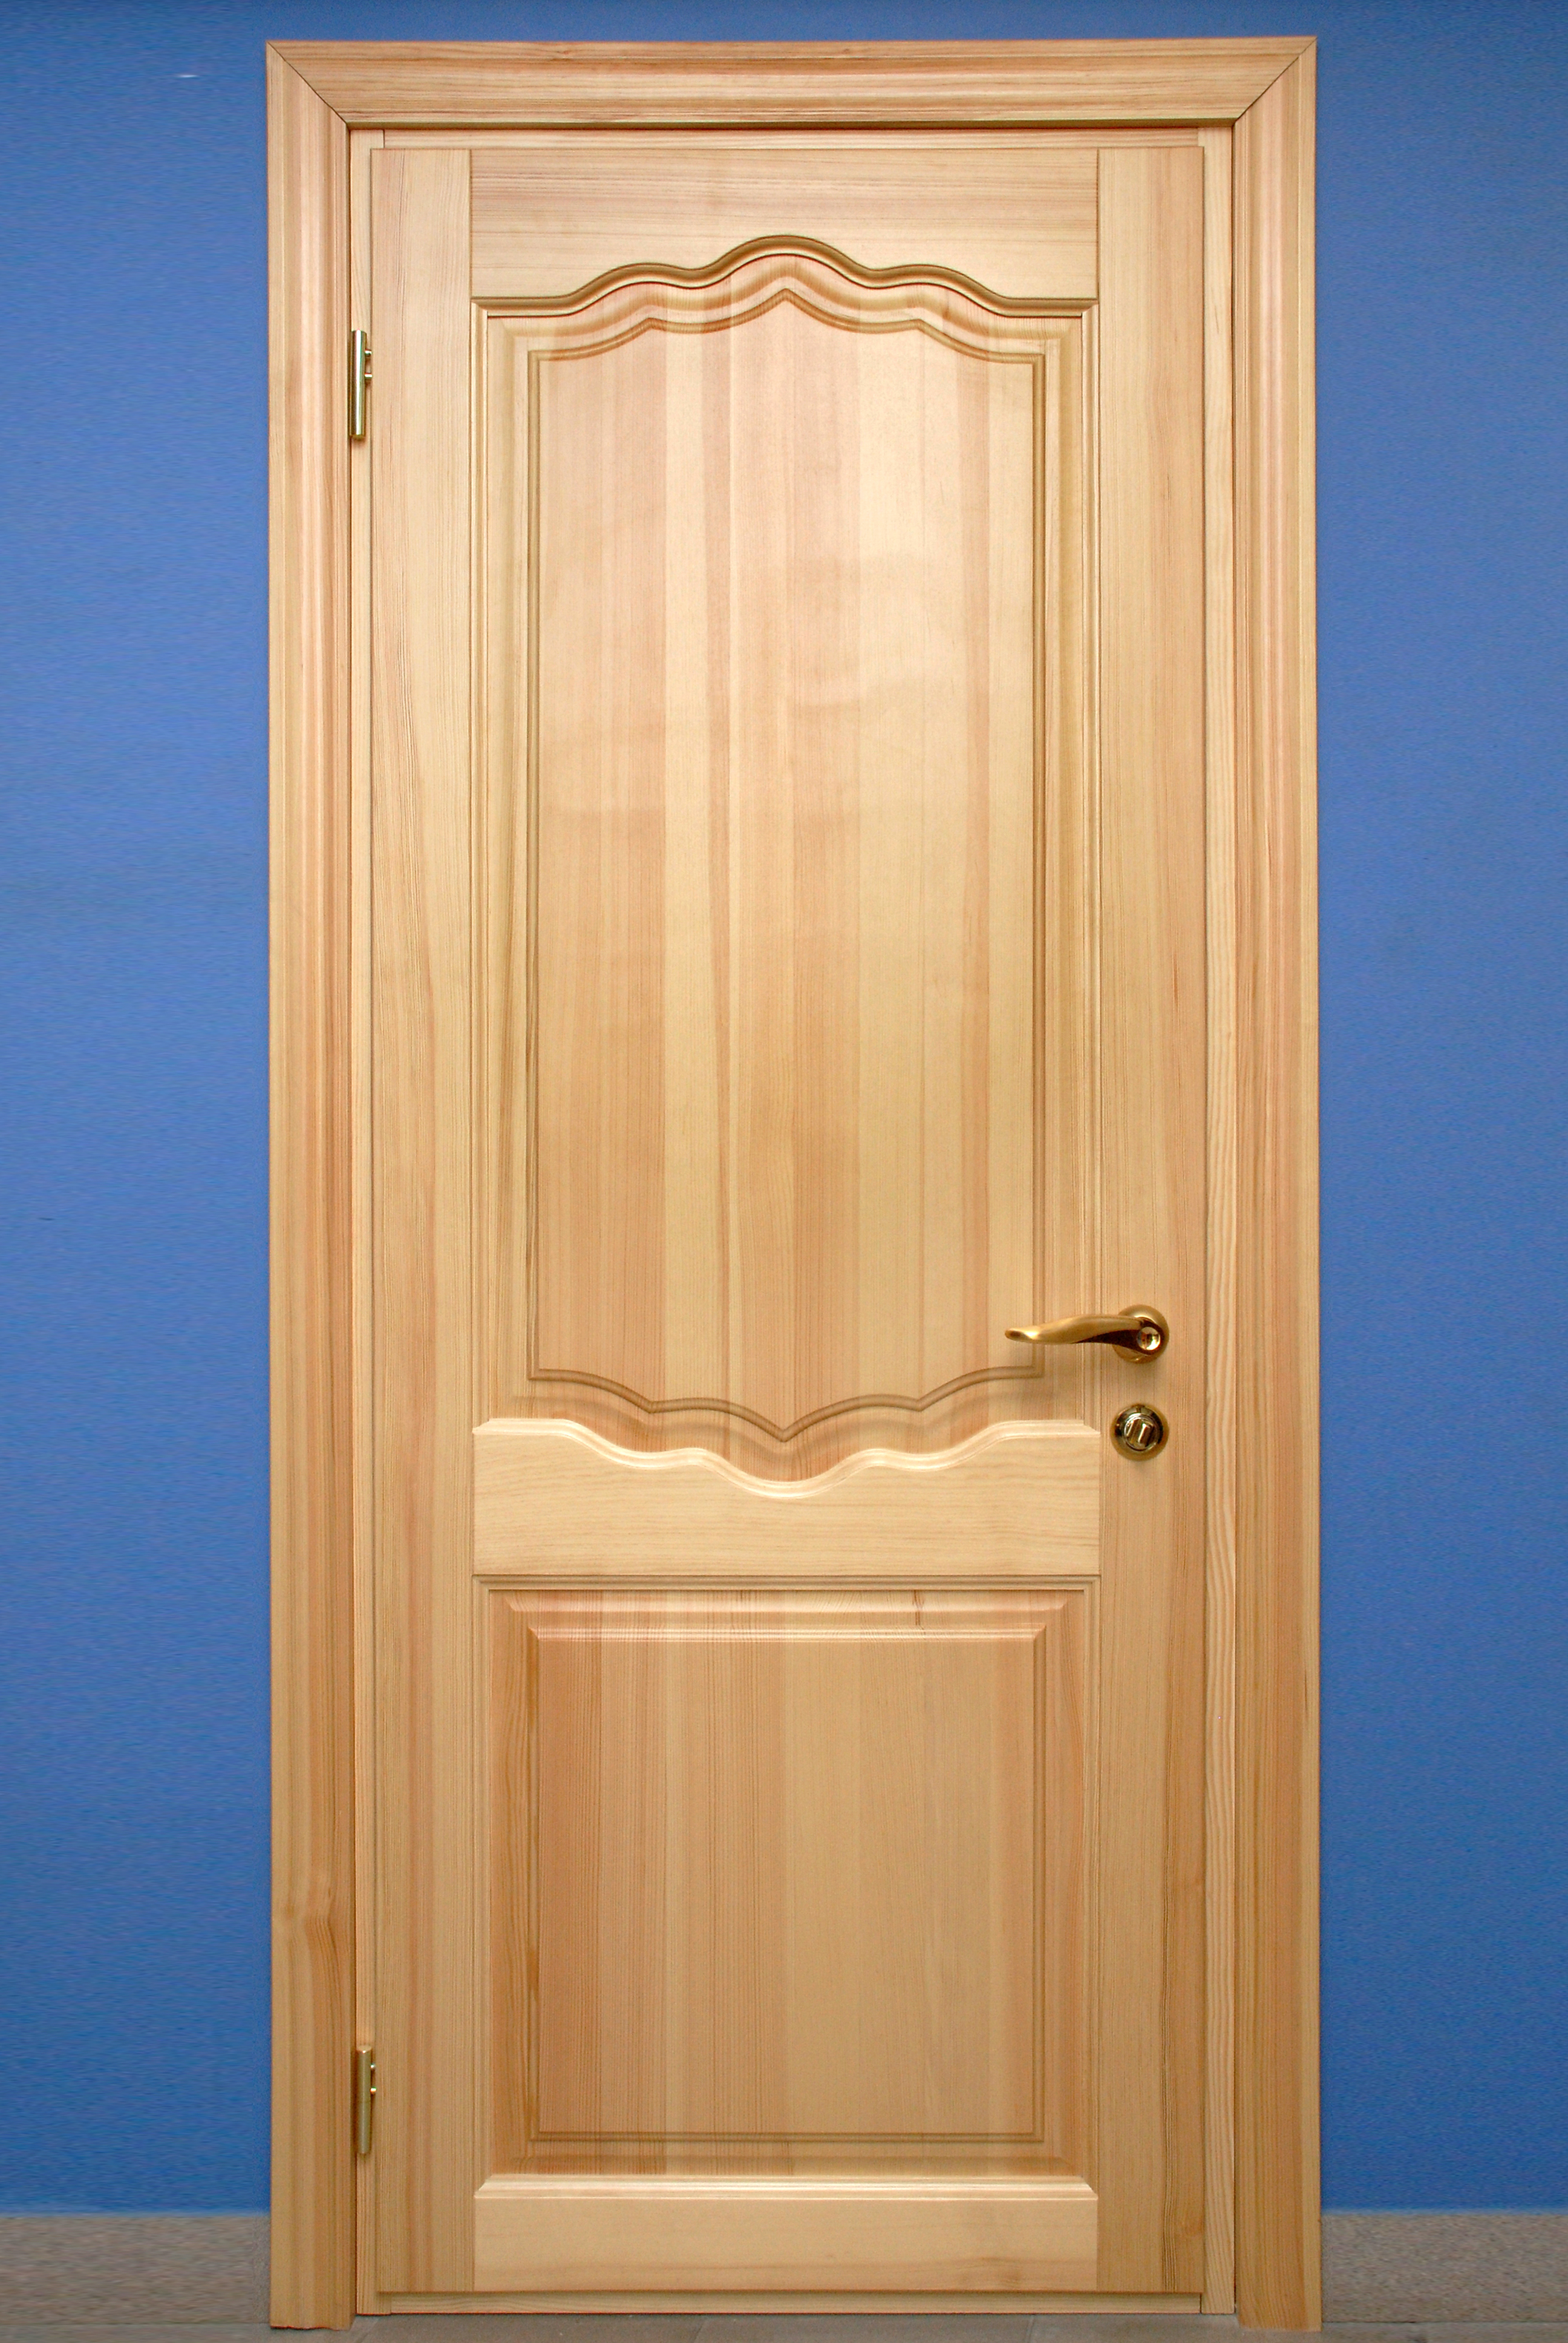 Конструкция филенчатых дверей: из чего они состоят?